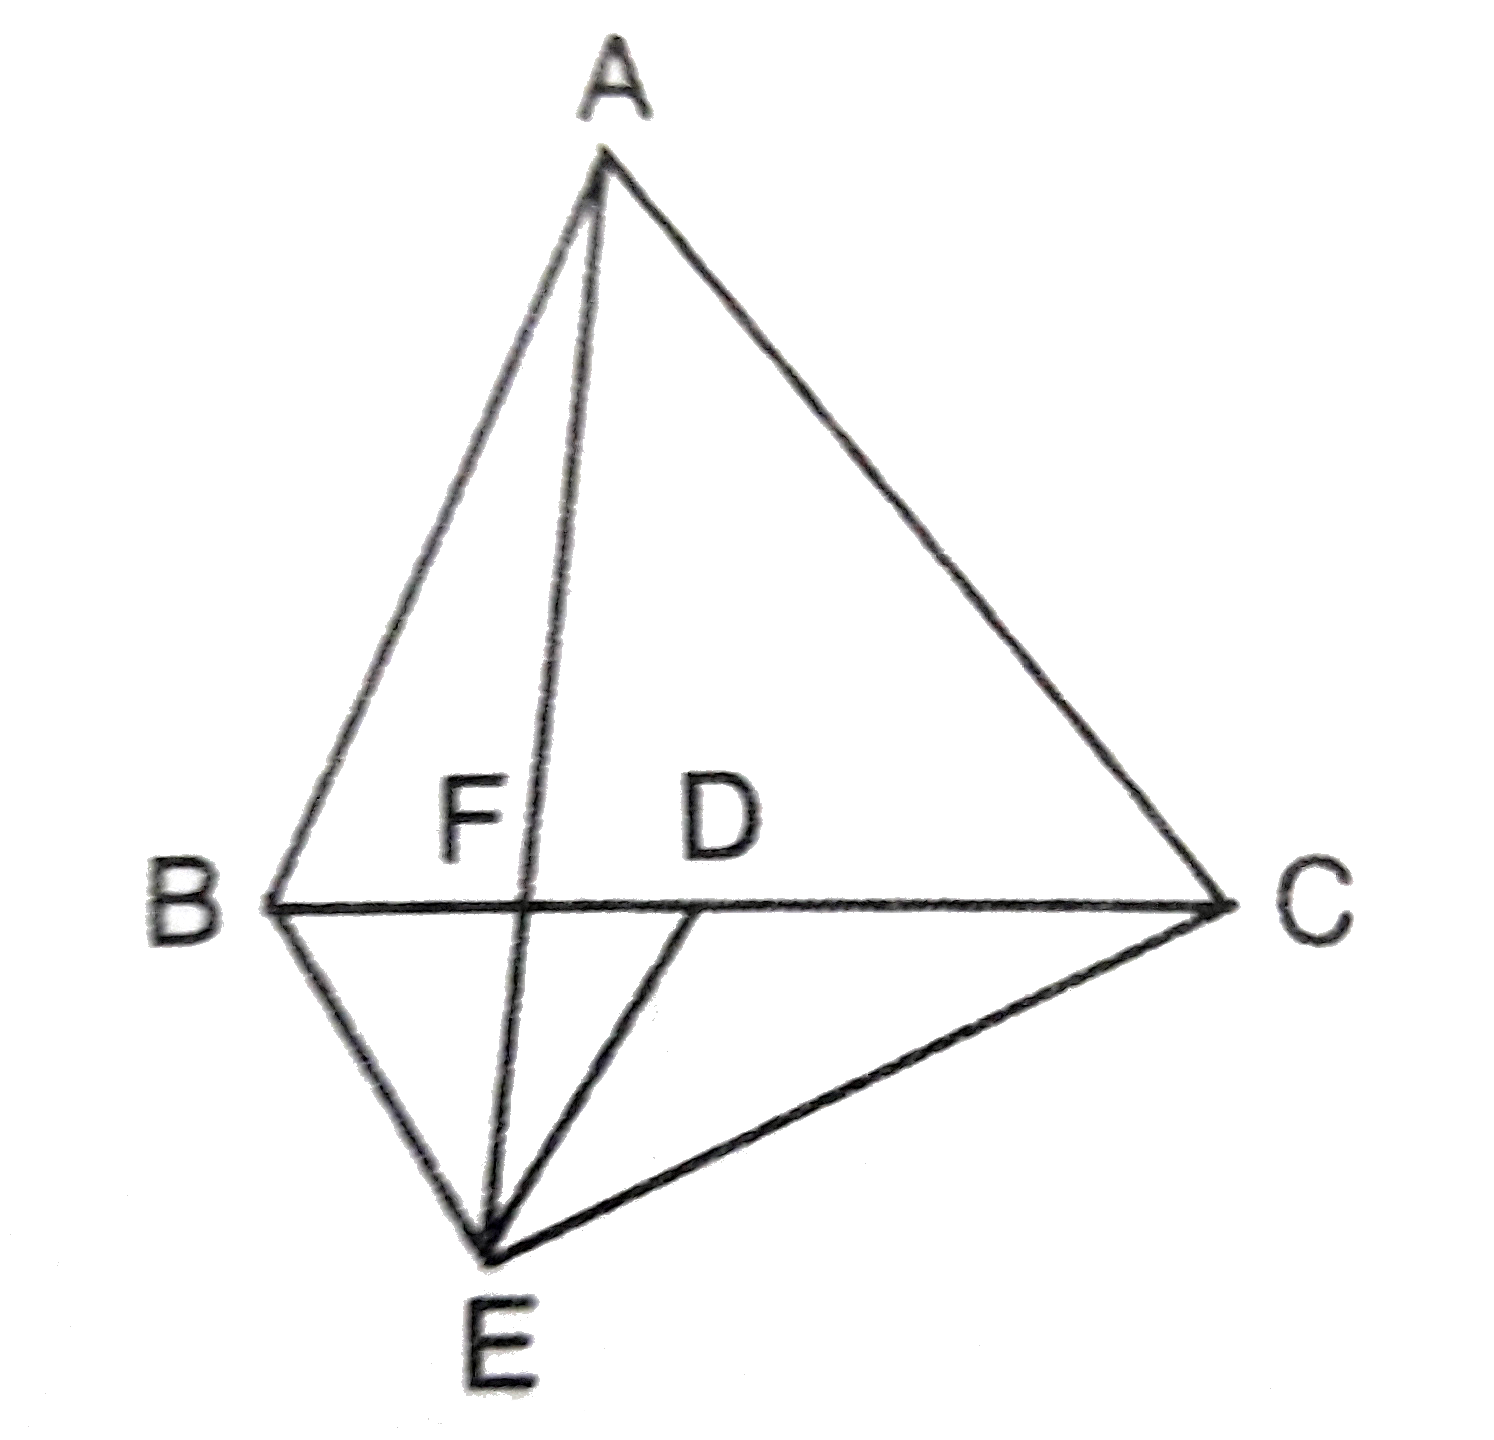 चित्र में, ABC तथा BDE समबाहु त्रिभुज इस प्रकार है कि BC का मध्य-बिंदु D है। यदि  AE , BC को बिंदु F पर  प्रतिच्छेद  करती है, तो सिद्ध कीजिए कि    (i) ar(DeltaBDE)=(1)/(4)ar(DeltaABC)   (ii) ar(DeltaBDE)=(1)/(2)(DeltaBAE)    (iii) ar(DeltaBFE)=2ar(DeltaFED)     (iv) ar(DeltaFED)=(1)/(8)ar(DeltaAFC)   (v) ar(DeltaABC) =2ar(DetlaABC)=2ar(DeltaBEC)   (vi) ar(DeltaBFE)=ar(DeltaAFD)